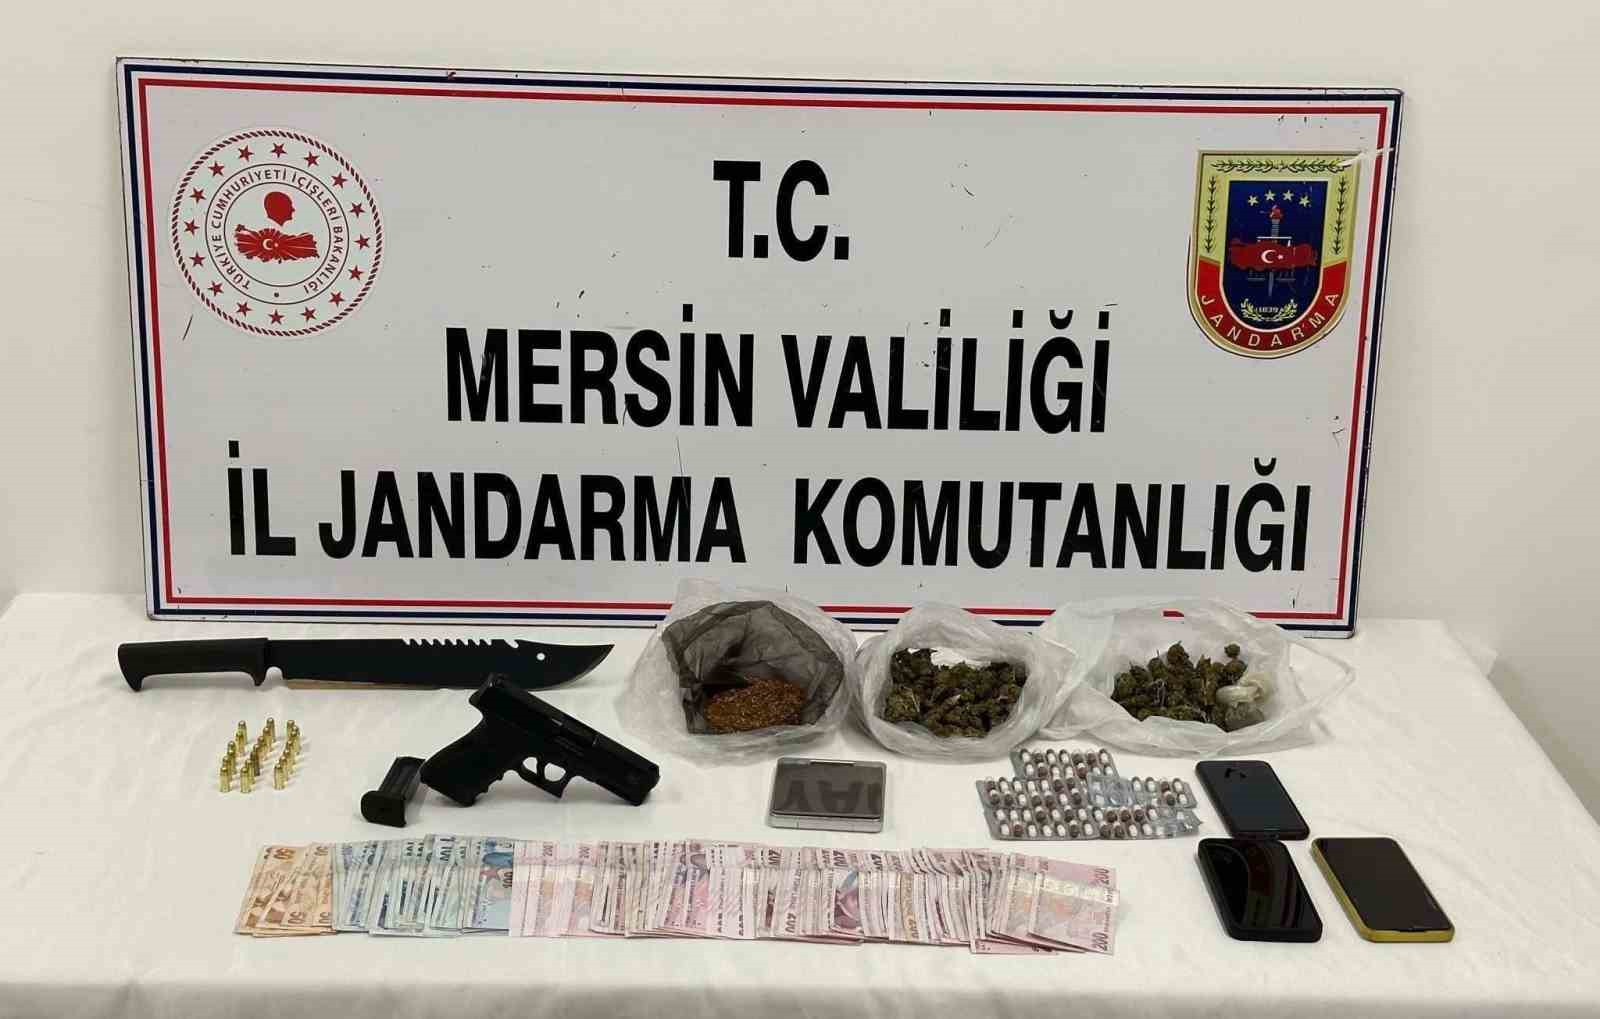 Mersin’de uyuşturucu operasyonu, 2 kişi tutuklandı